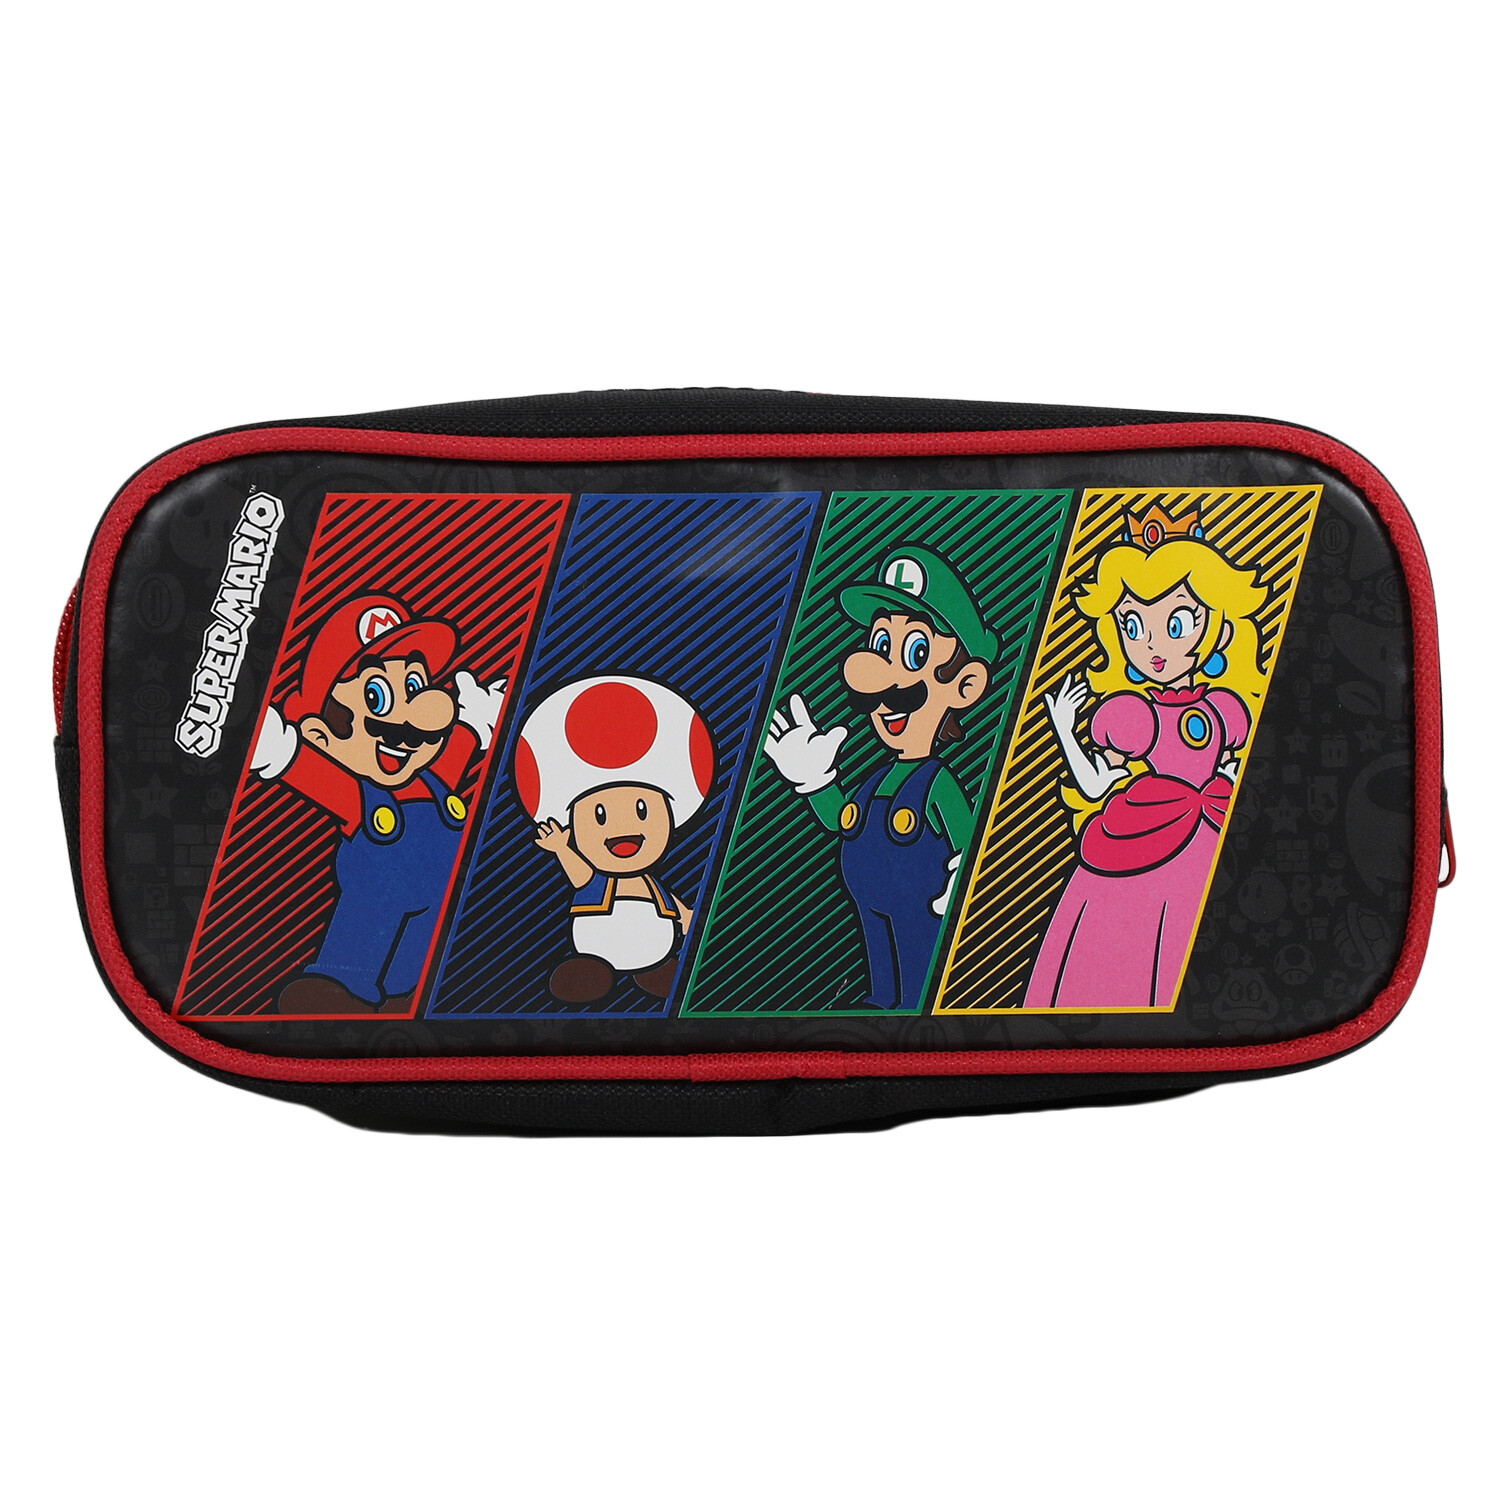 Super Mario Pencil Case - Black Image 1